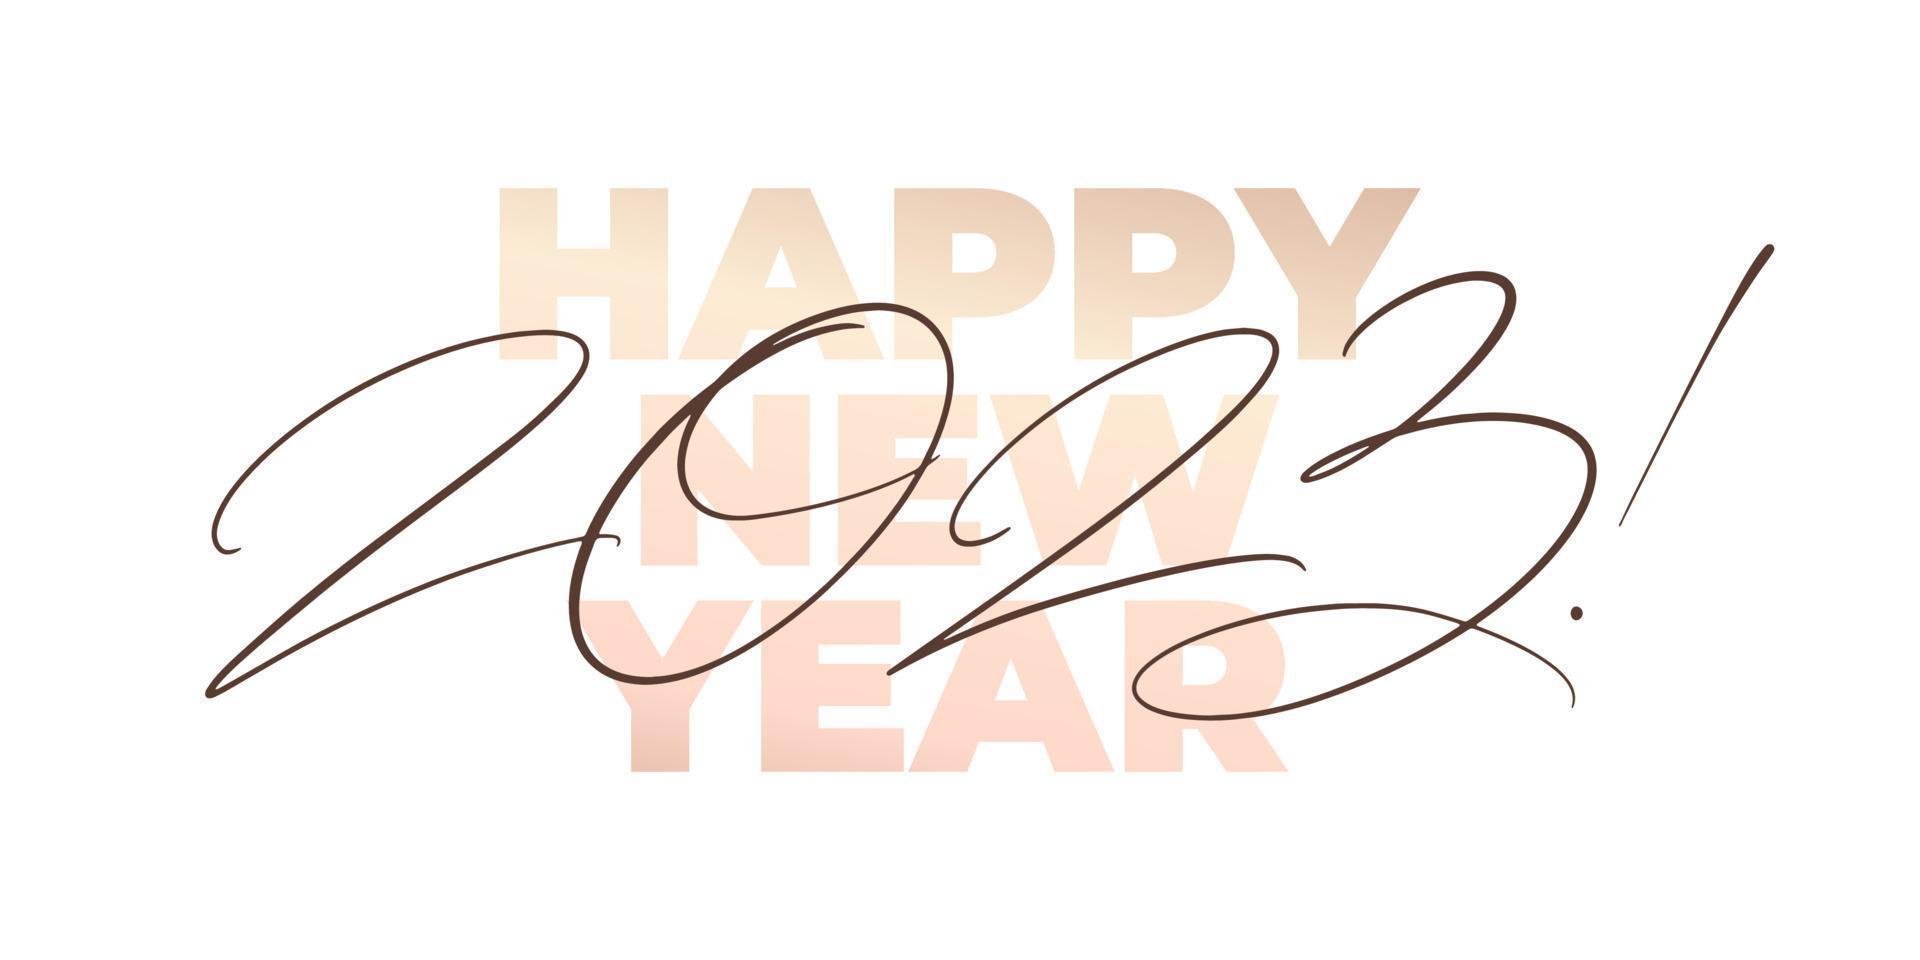 2023 letras finas modernas. tarjeta de felicitación elegante minimalista de año nuevo. inscripción negra dibujada a mano. vector